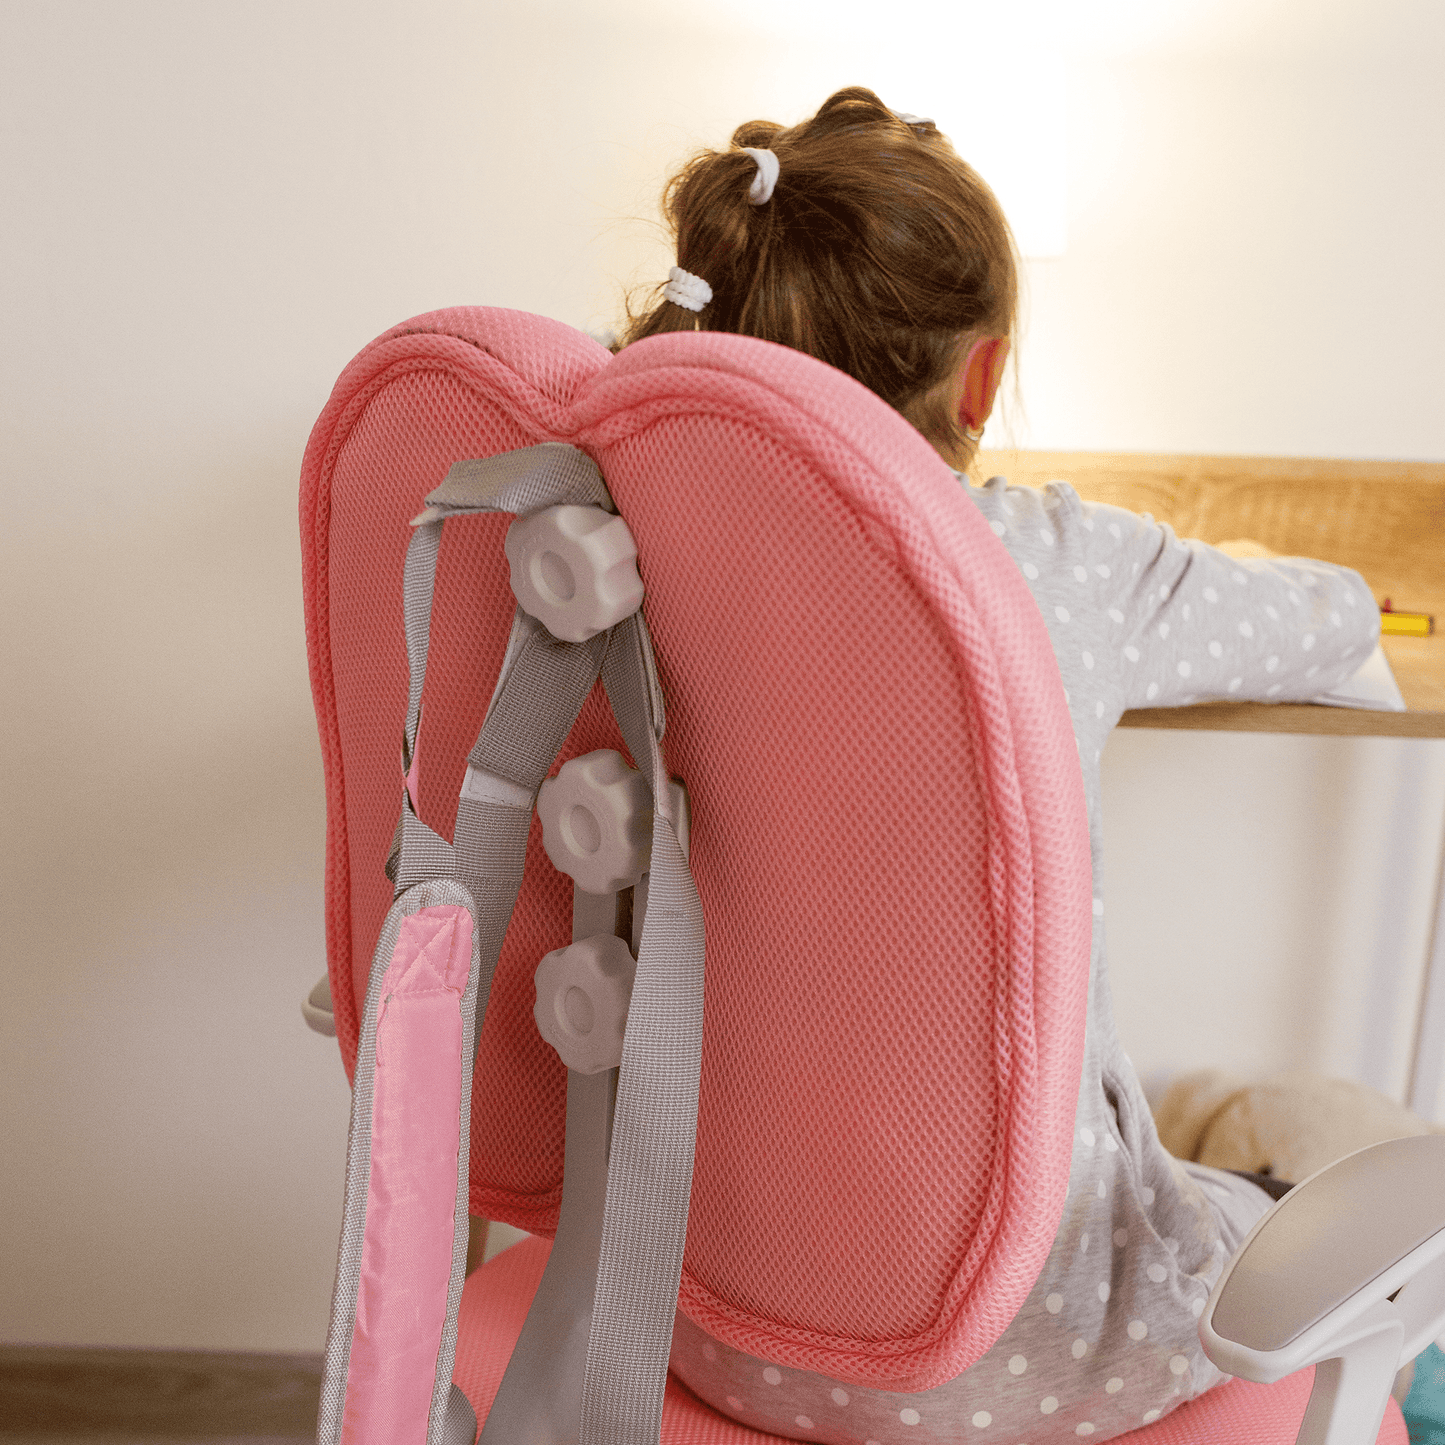 Scaun reglabil cu suport pentru picioare și curele, roz/alb, ANAIS